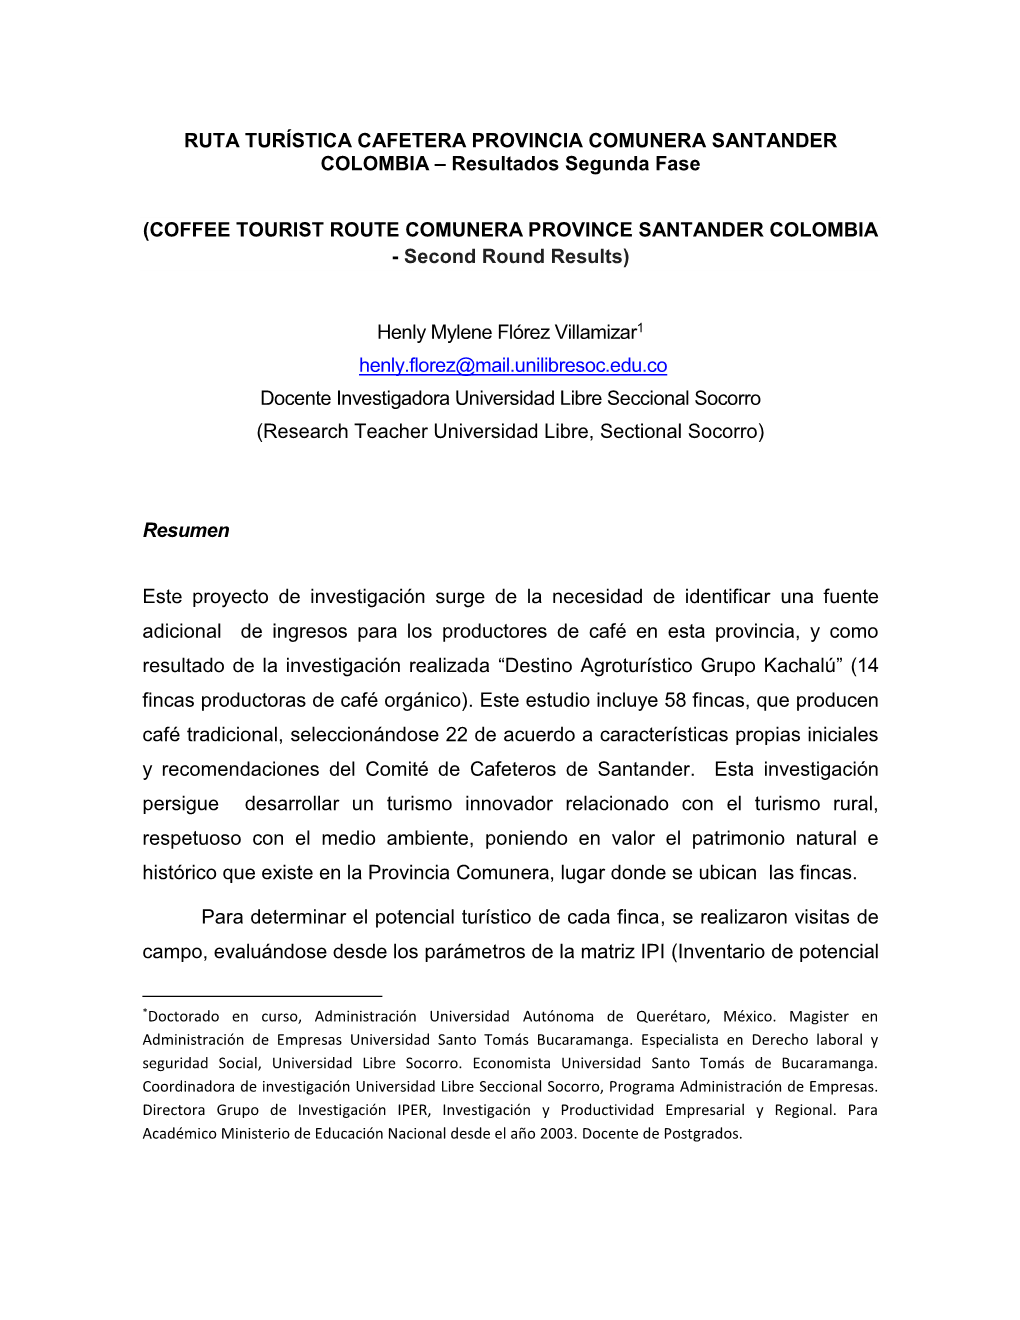 RUTA TURÍSTICA CAFETERA PROVINCIA COMUNERA SANTANDER COLOMBIA – Resultados Segunda Fase